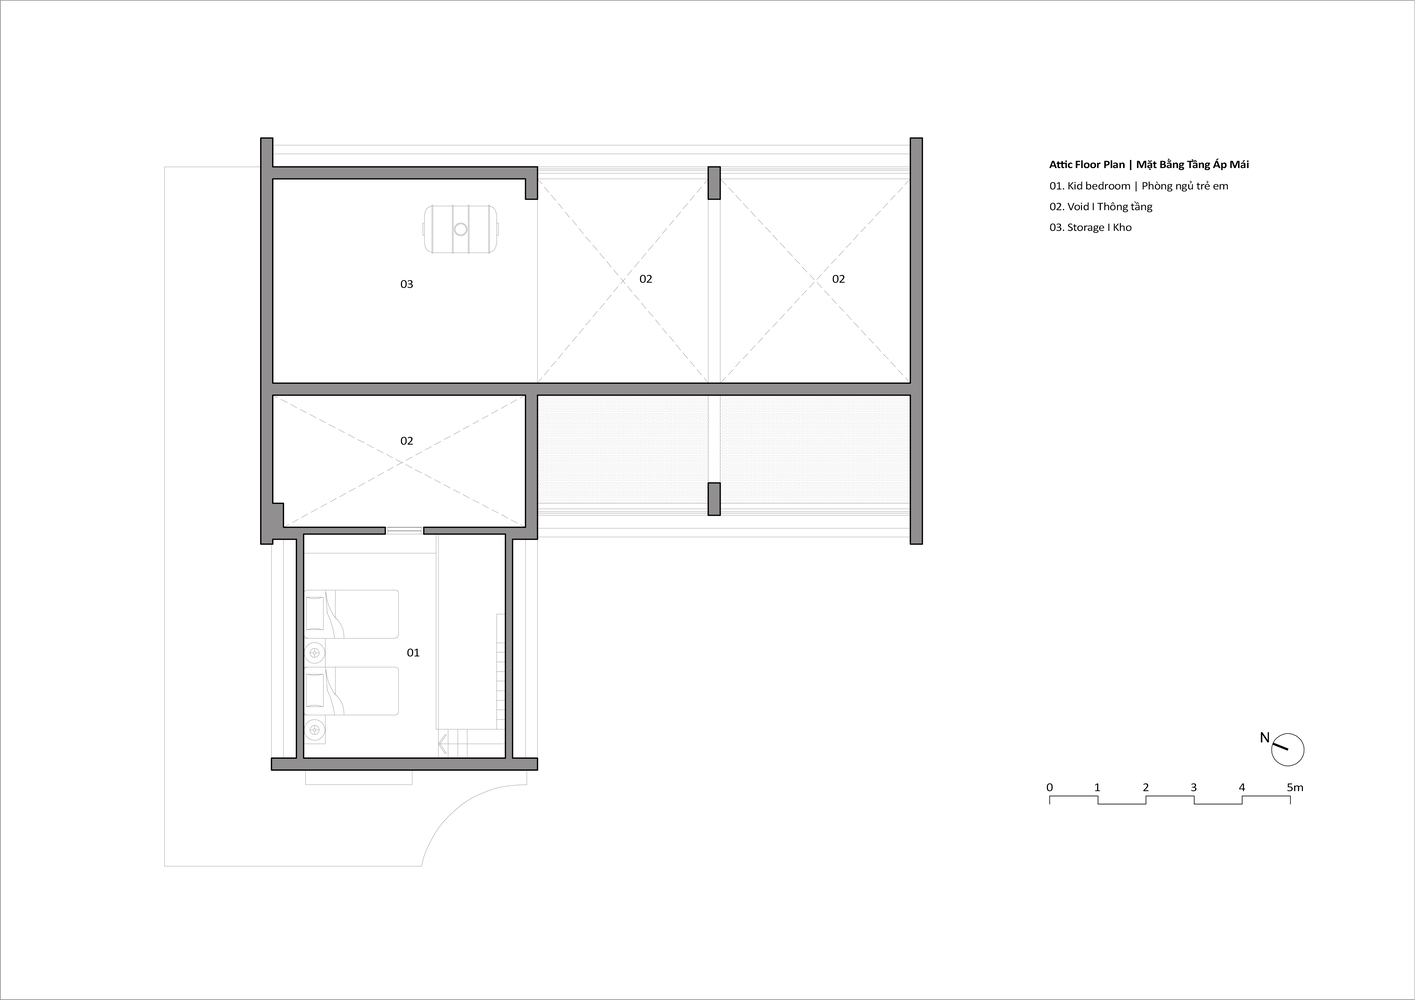 Thái Bình House: Ngôi nhà mang hơi hươm vùng quê Bắc Bộ pha lẫn nét hiện đại ấn tượng - Ảnh 23